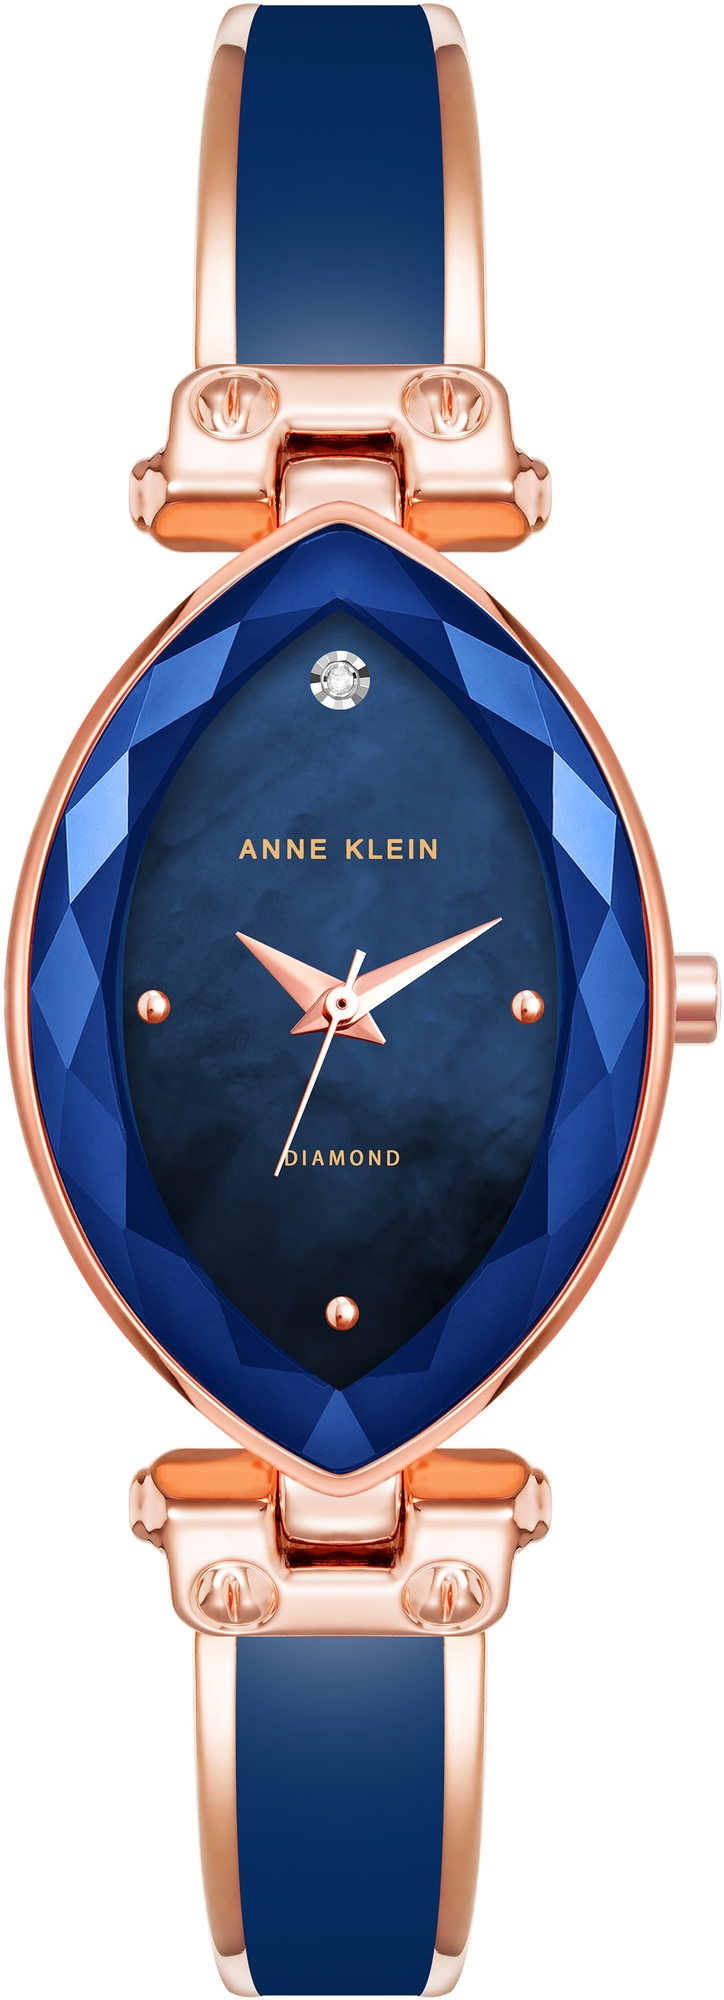 Наручные часы Anne Klein 4018NVRG наручные часы anne klein 2972mpgb